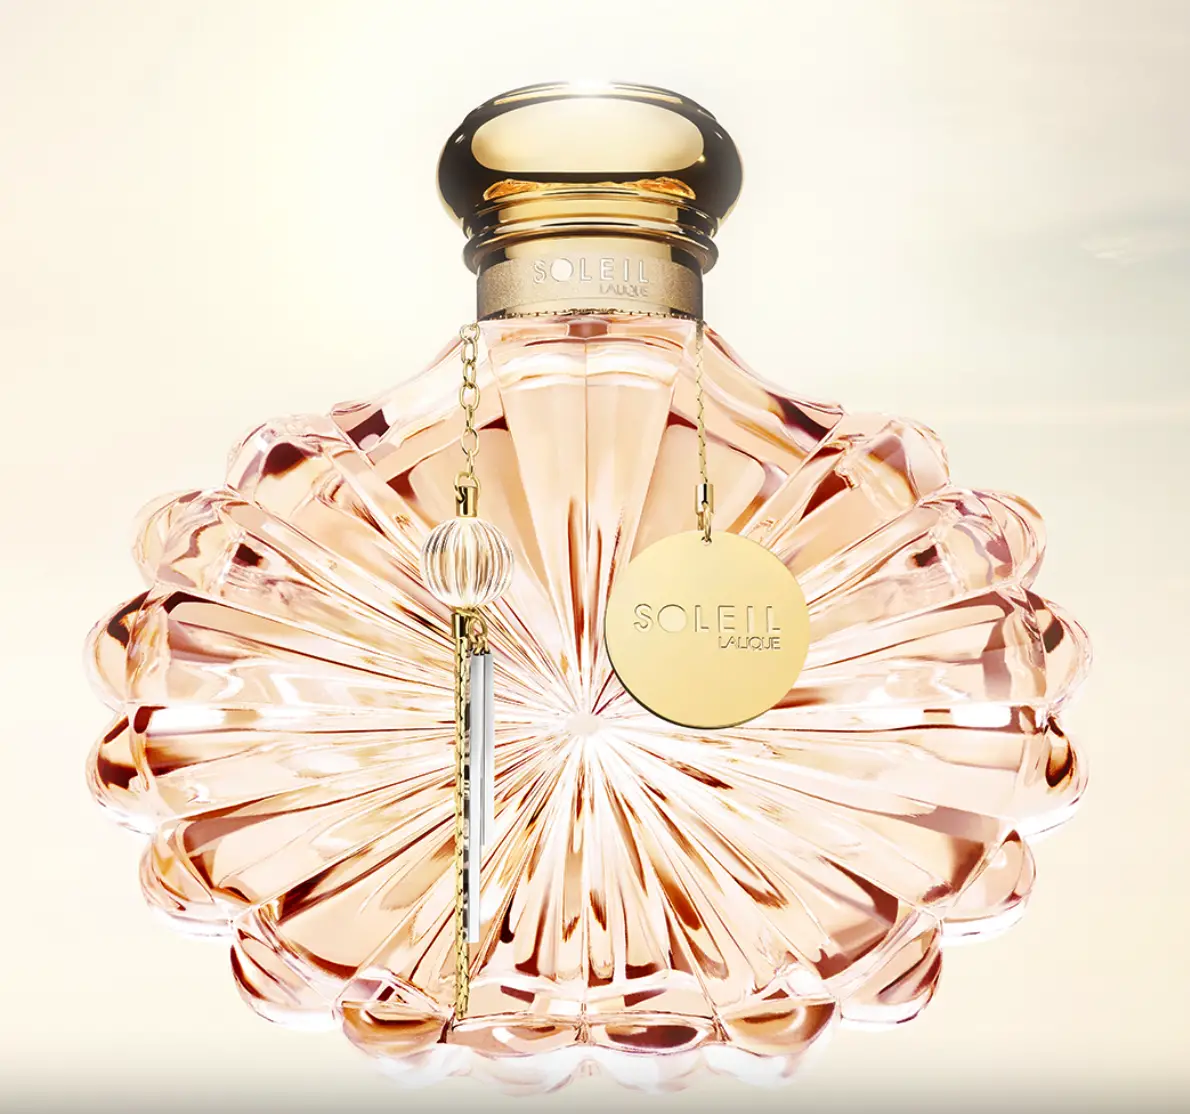 Летуаль парфюм для женщин. Лалик Солейл. Lalique парфюмерная вода Soleil. Парфюм Солейл Лалик. Туалетная вода Lalique Soleil женская.